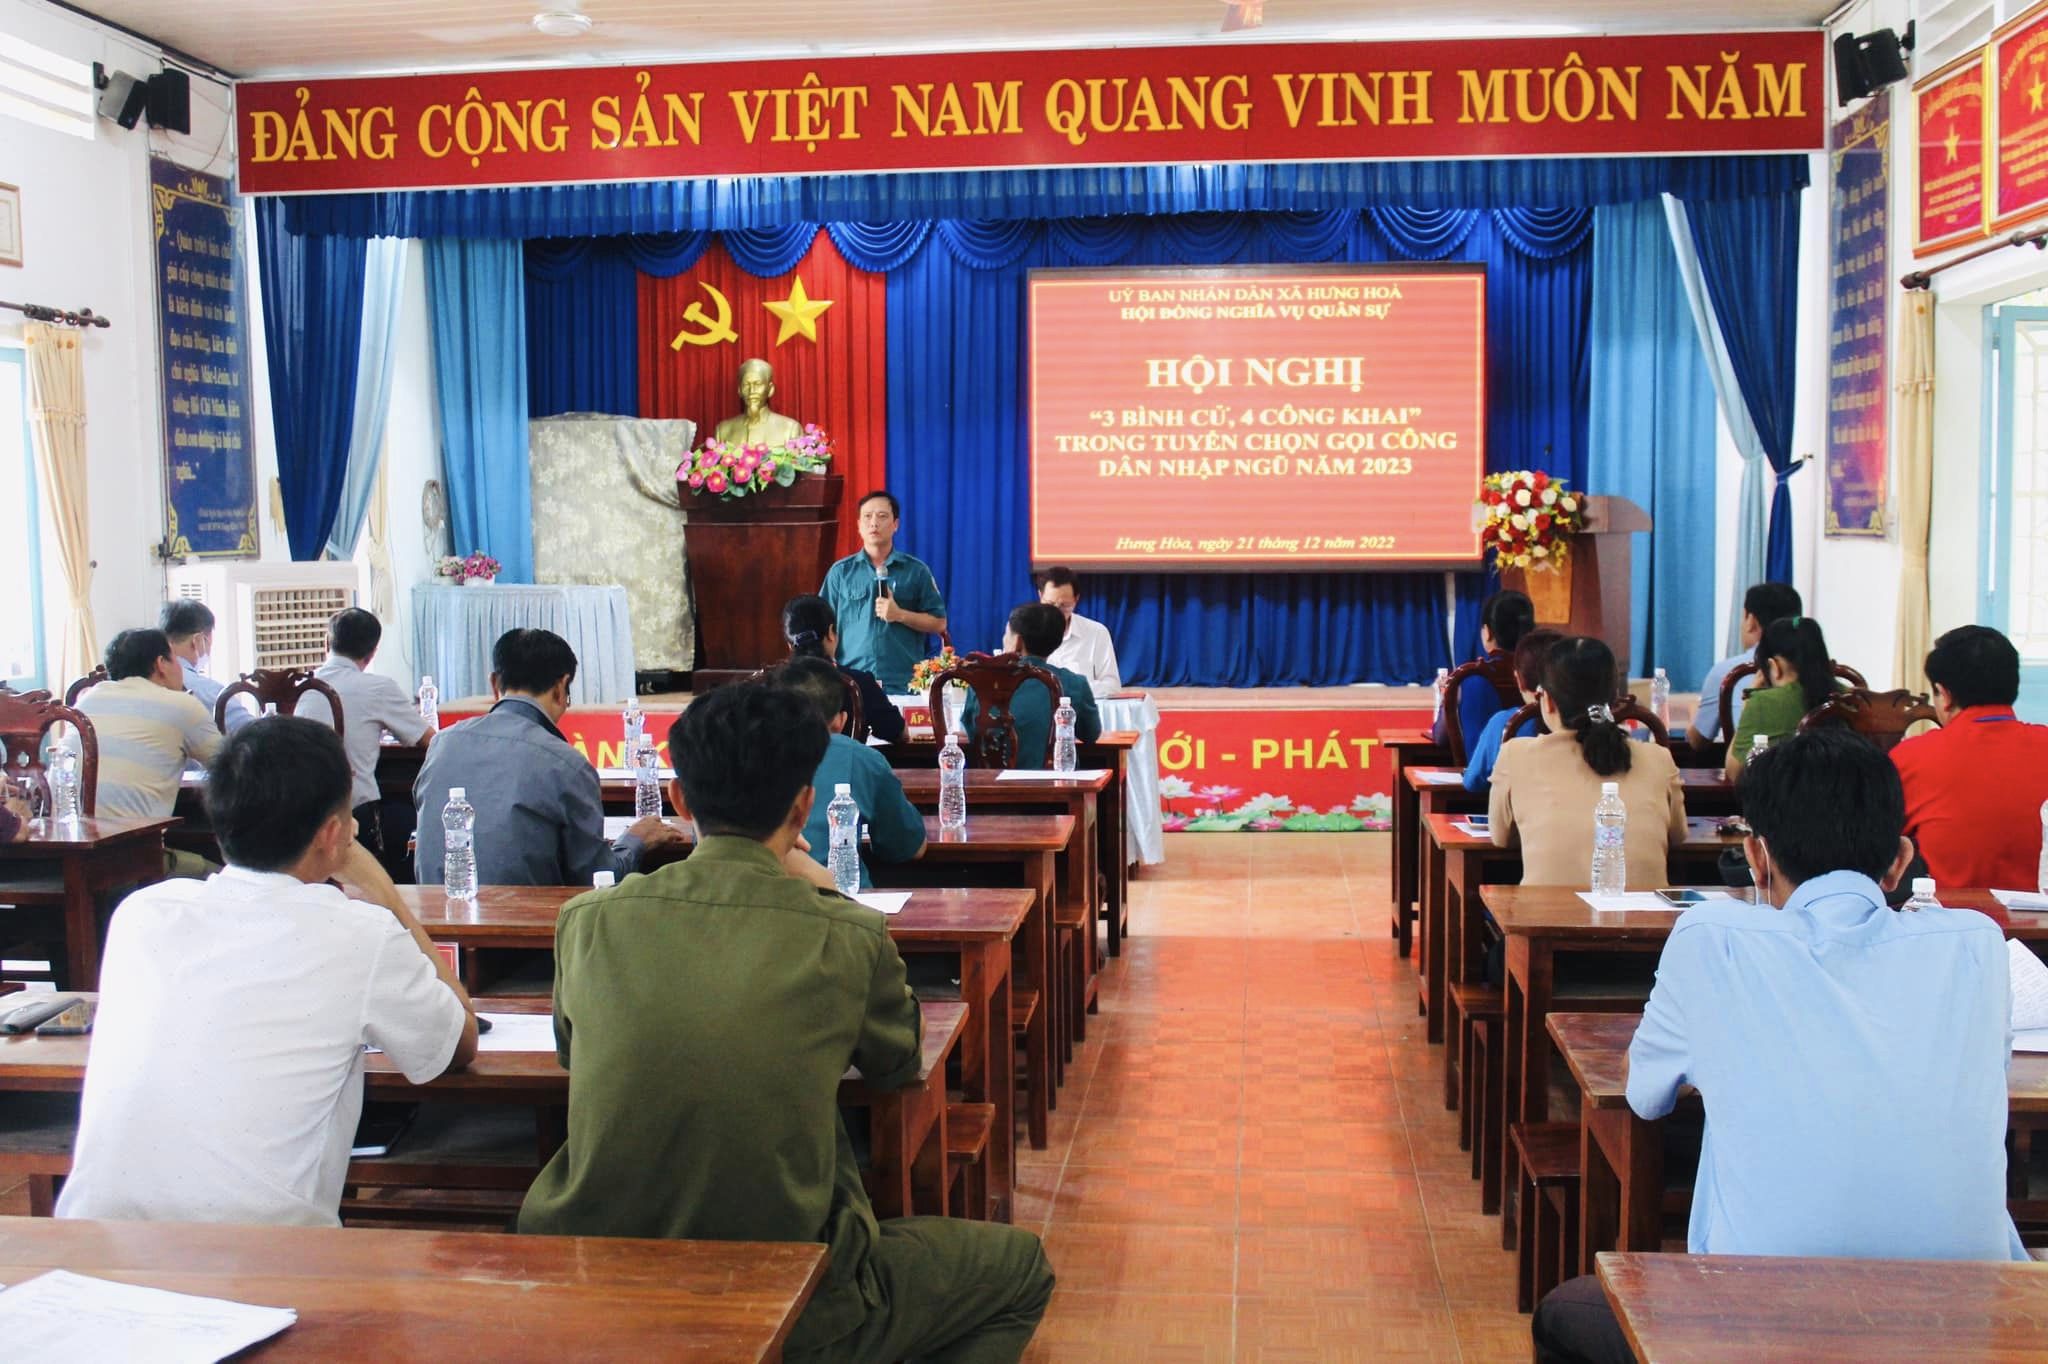 Hội đồng NVQS xã Hưng Hòa tổ chức “3 bình cử, 4 công khai” nguồn thanh niên sẵn sàng nhập ngũ năm 2023.